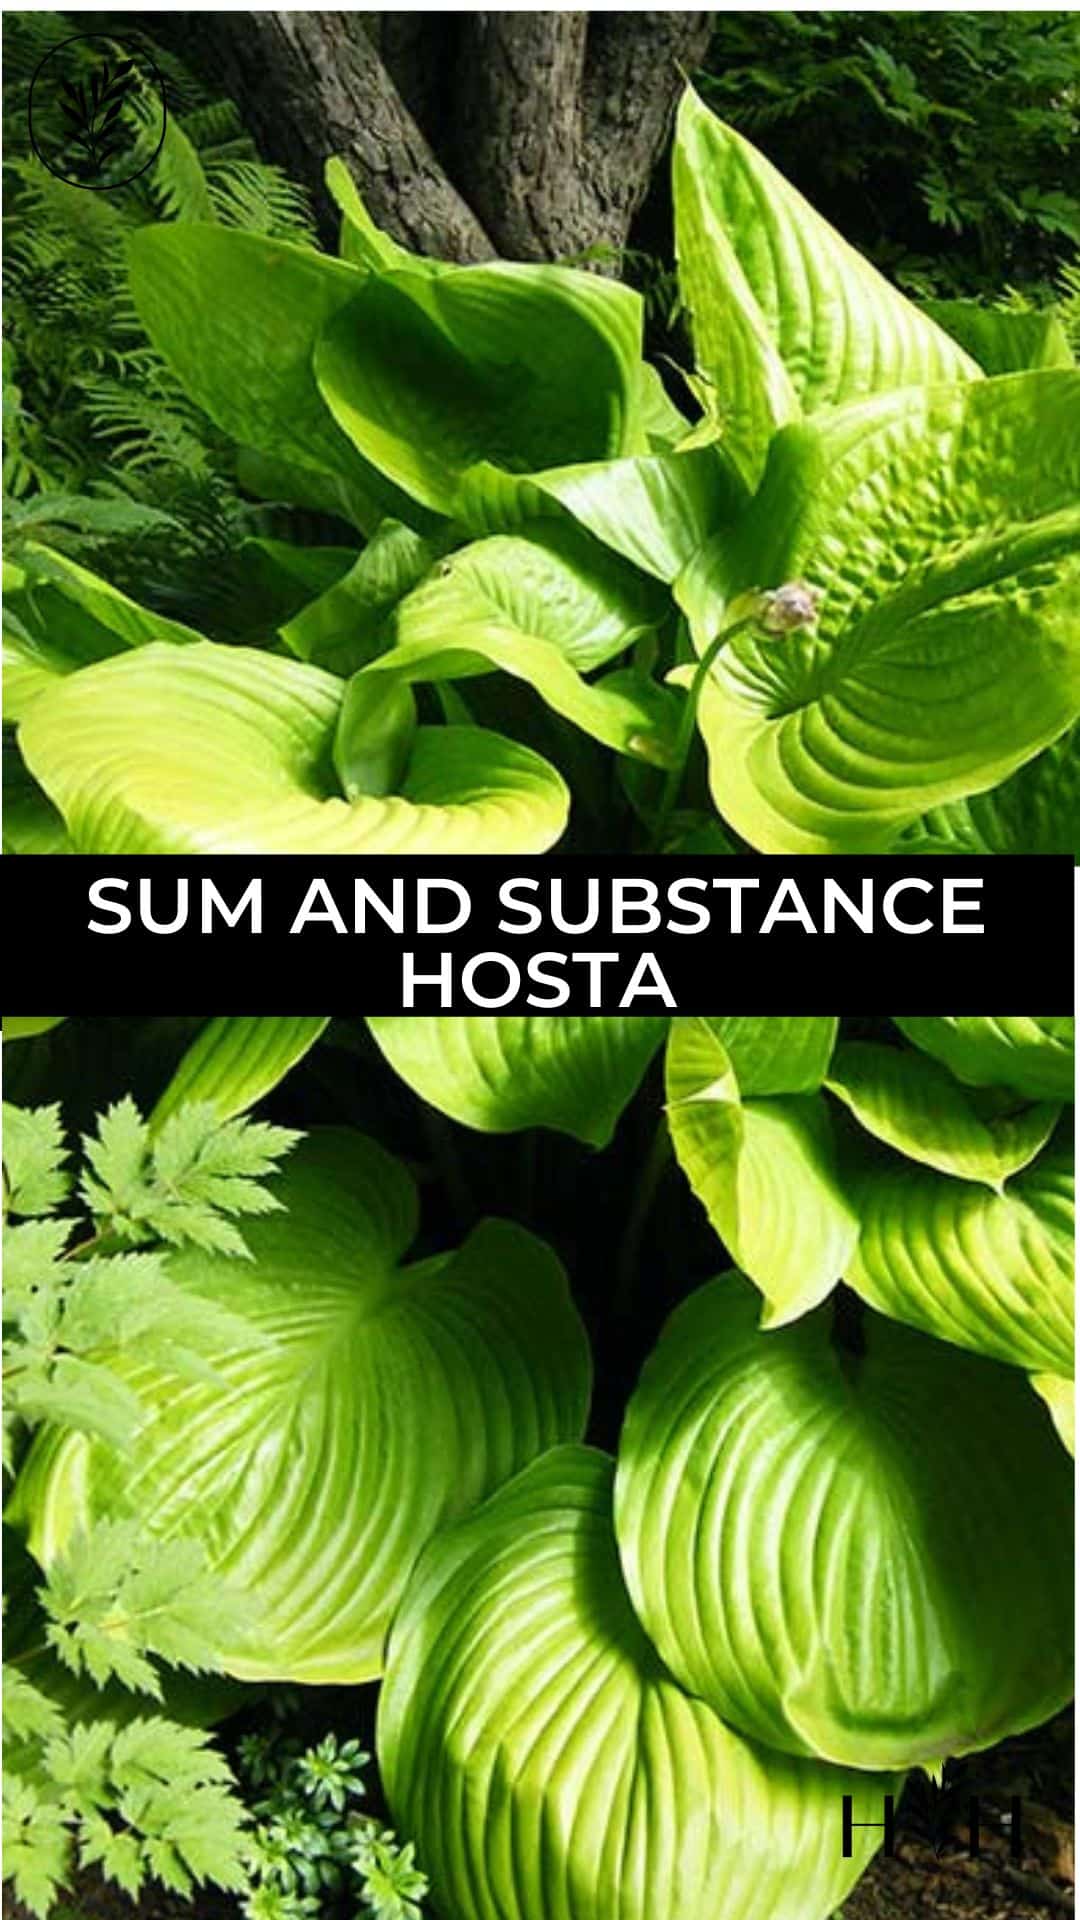 Sum and substance hosta via @home4theharvest